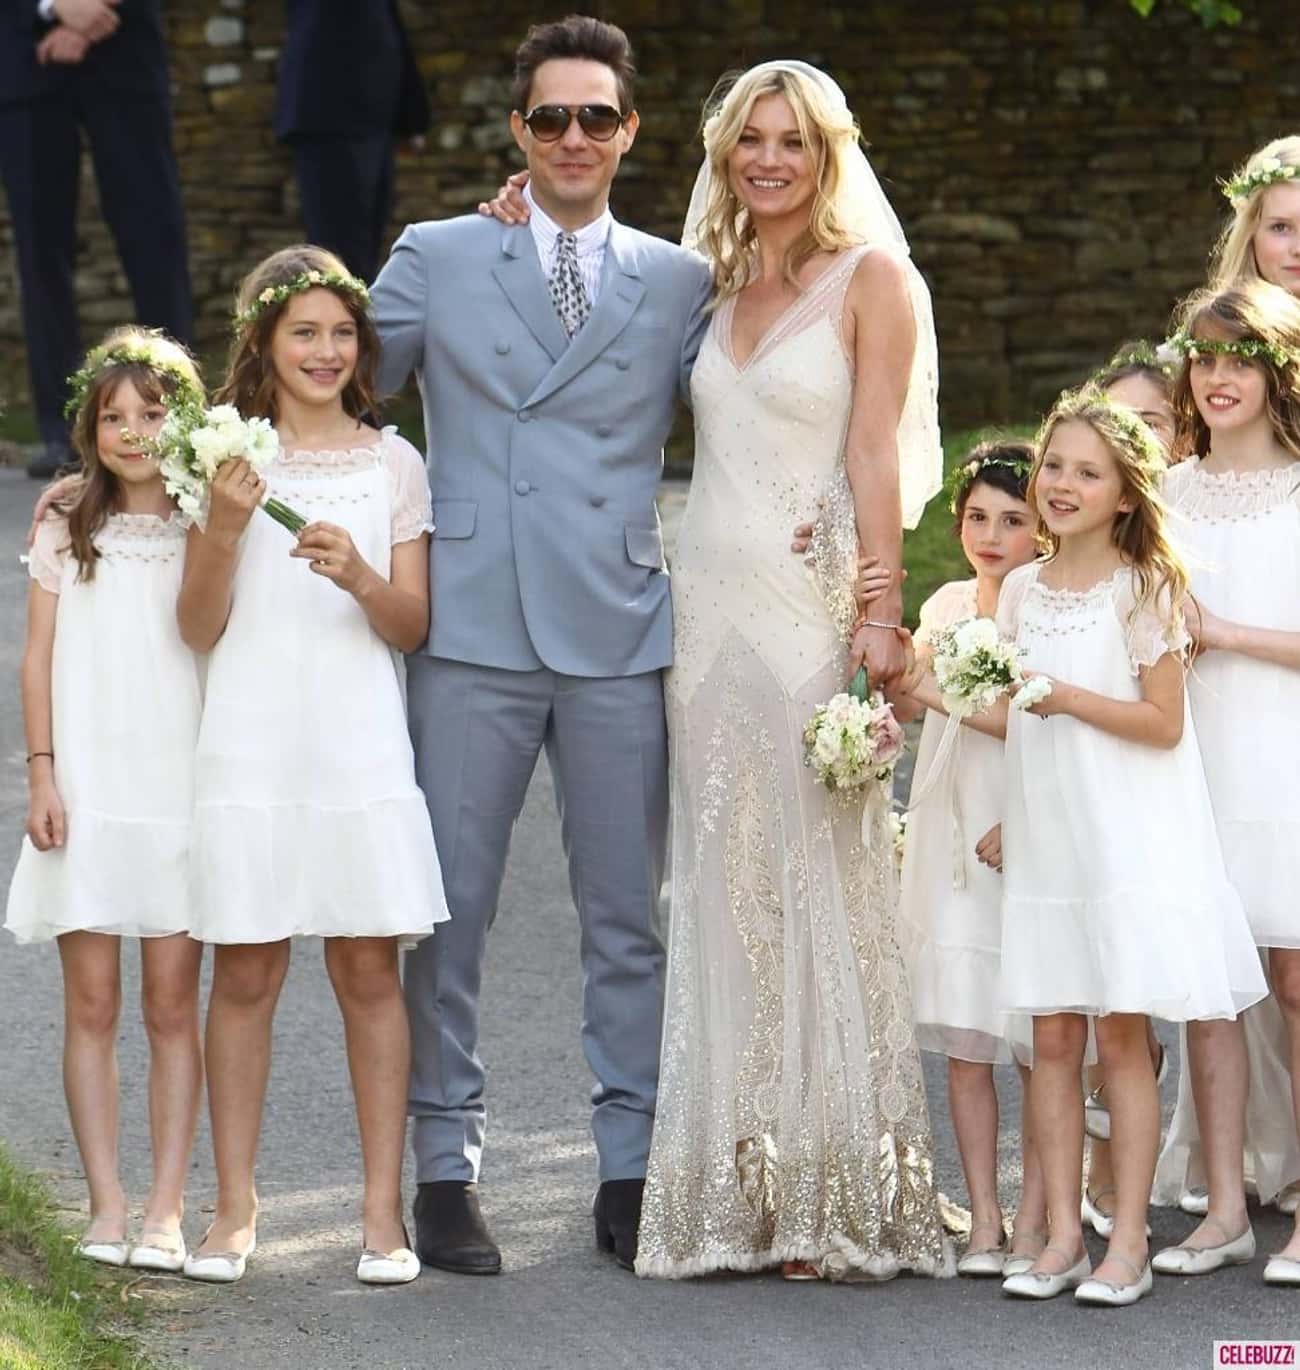 Выходить замуж в 21. Кейт Мосс свадьба. Кейт Мосс и Джейми Хинс свадьба. Кейт Мосс в свадебном. Свадебное платье Кейт Мосс.